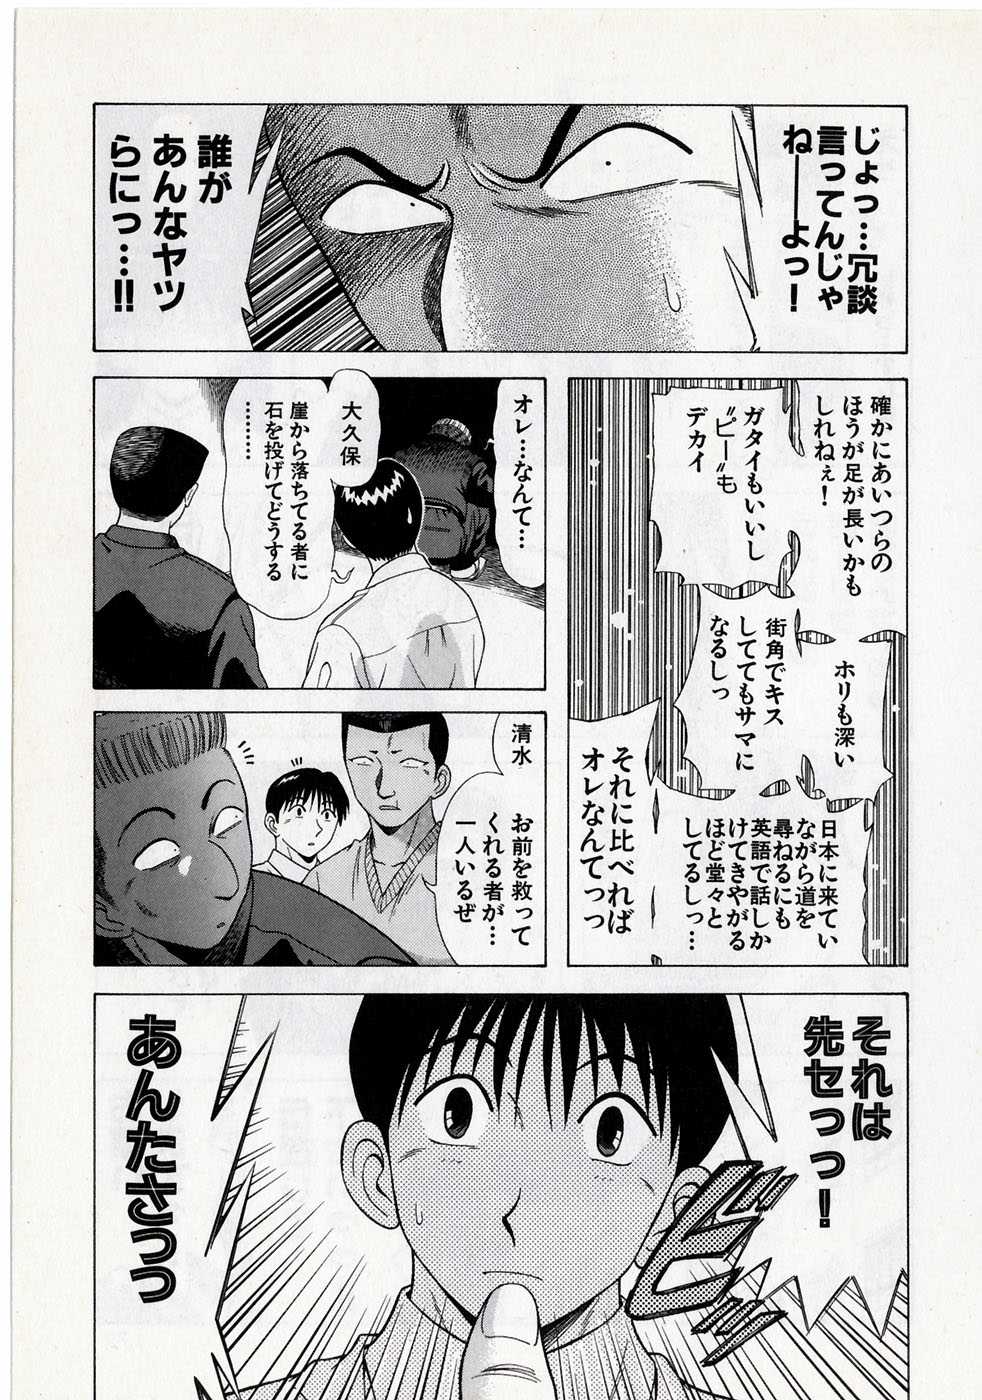 Kyoukasho ni nai vol. 8 教科書にないッ！